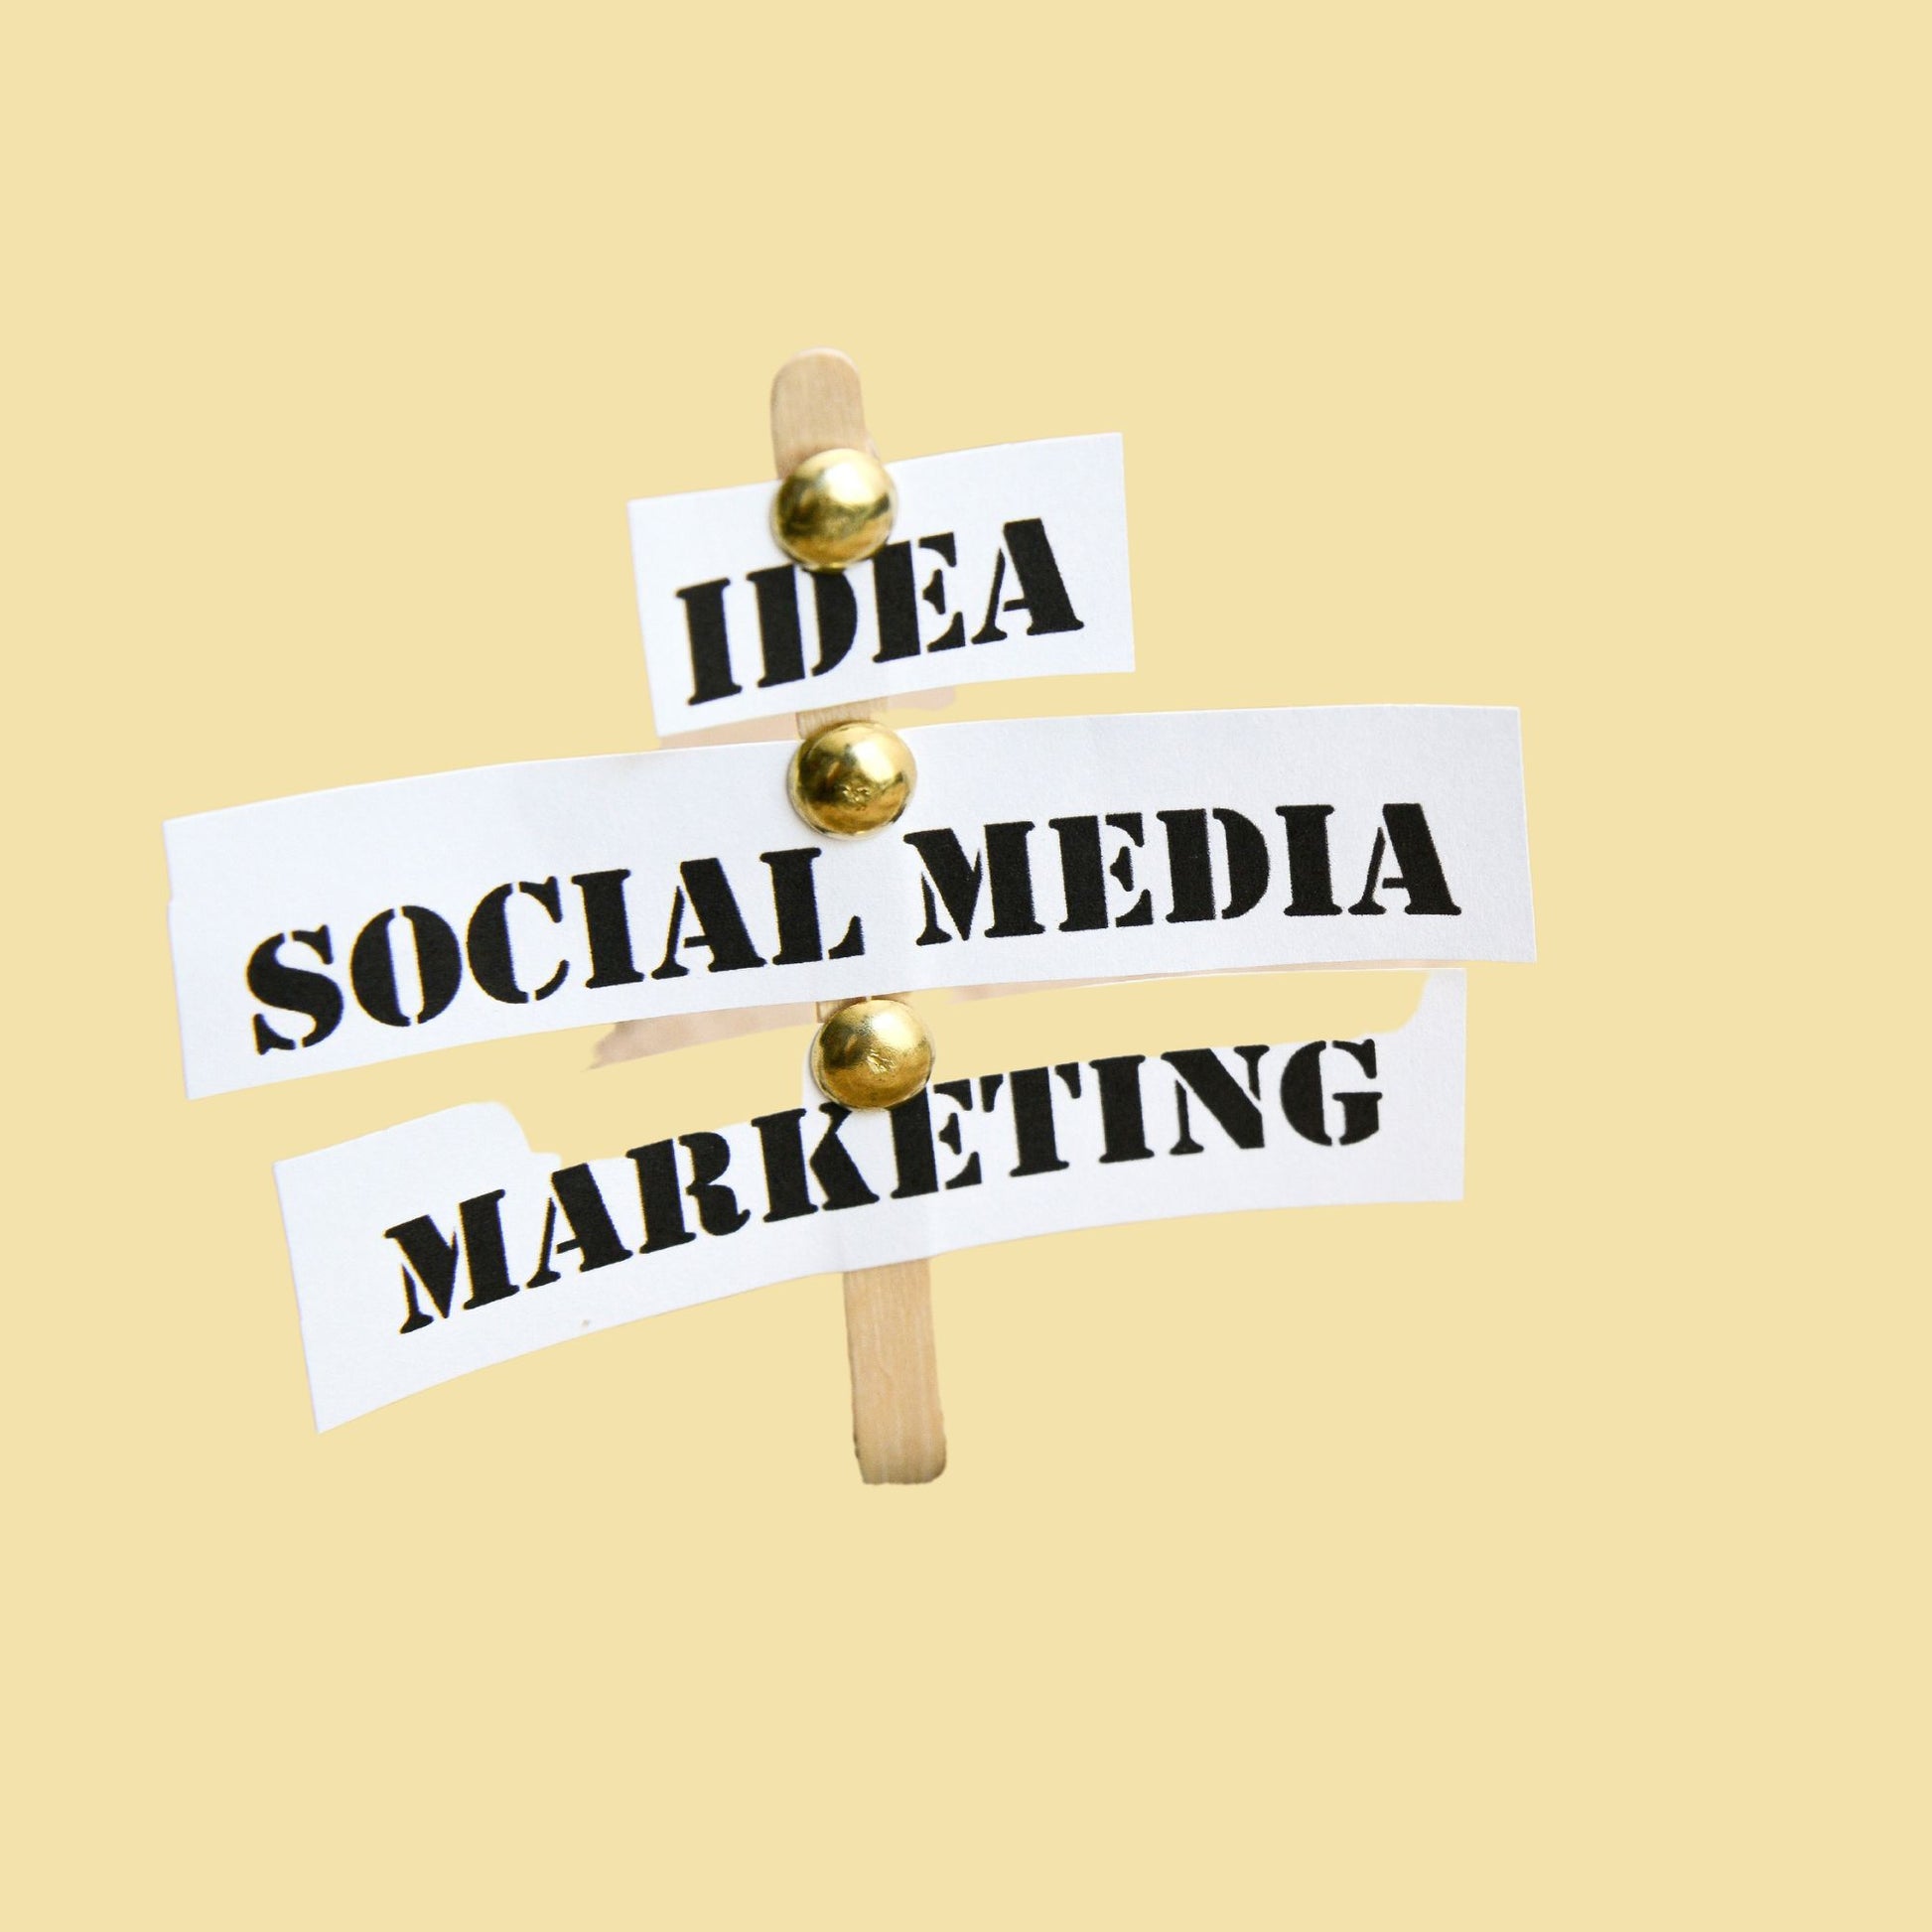 Social media marketing sign